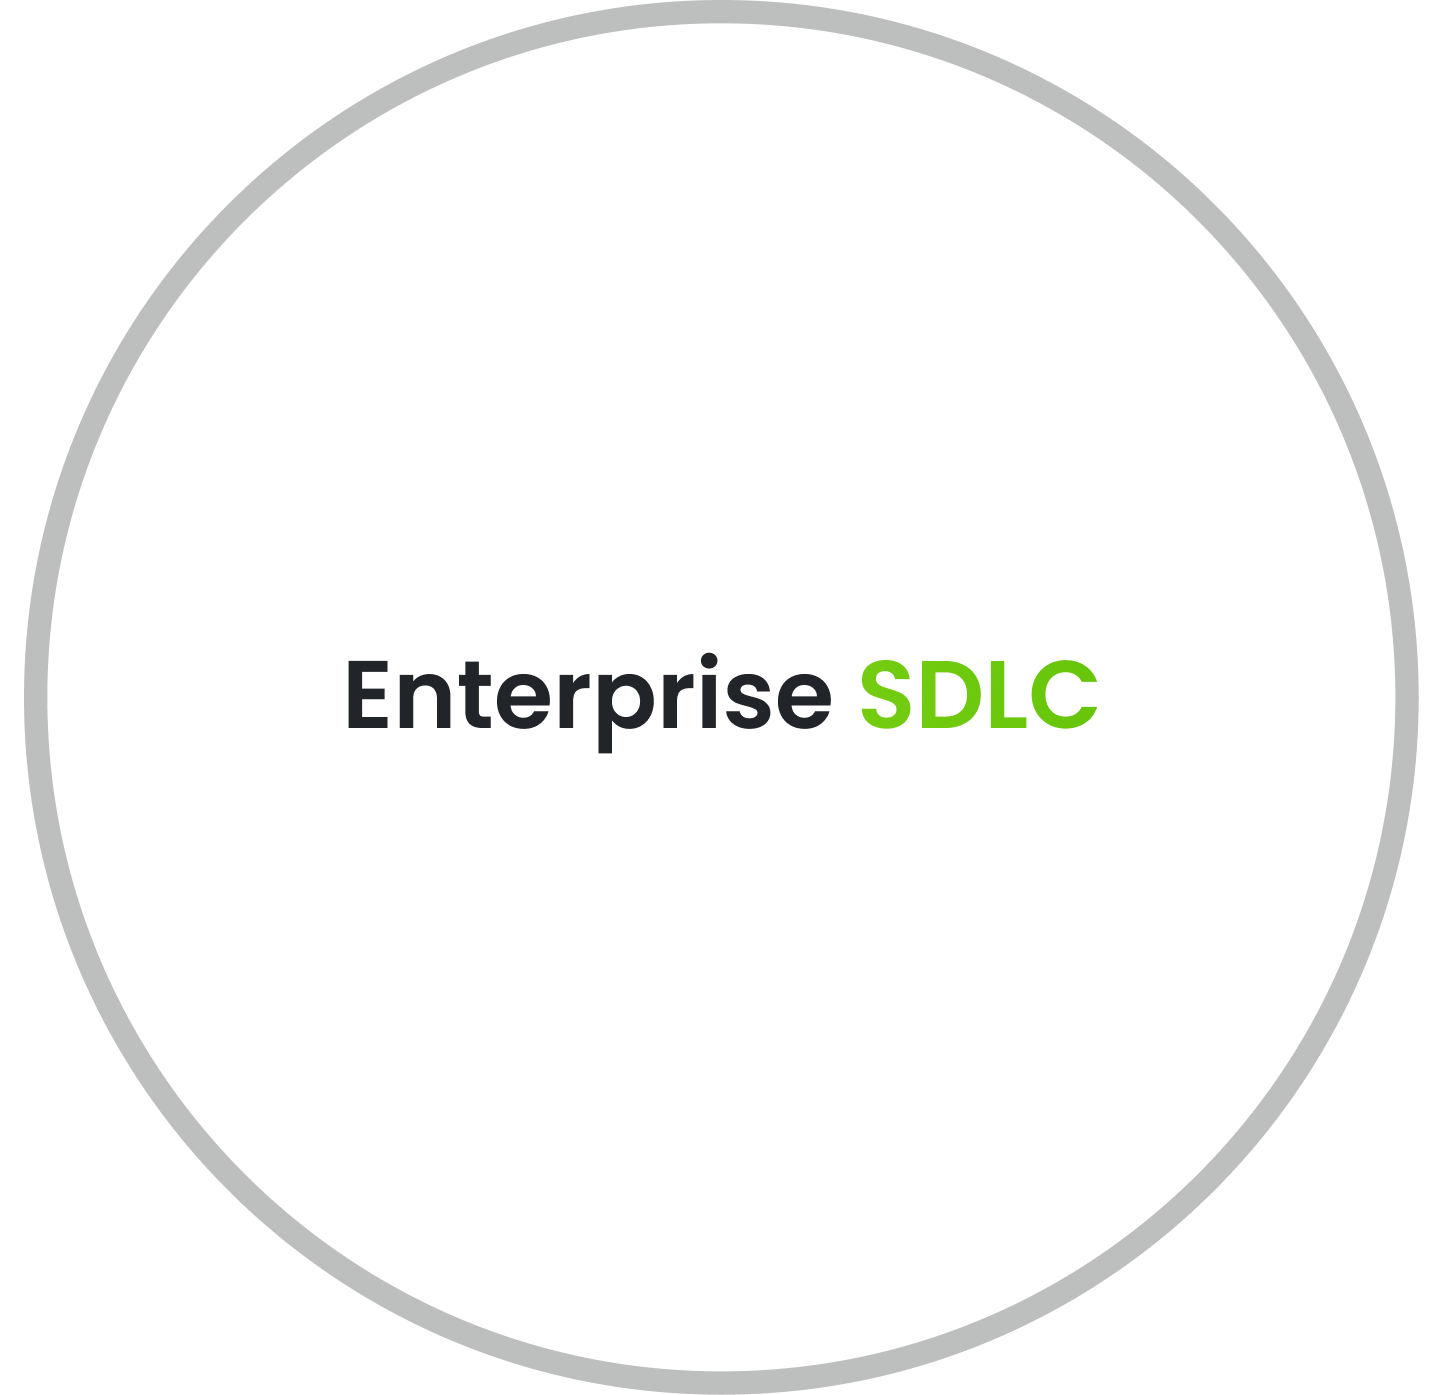 Enterprise SDLC